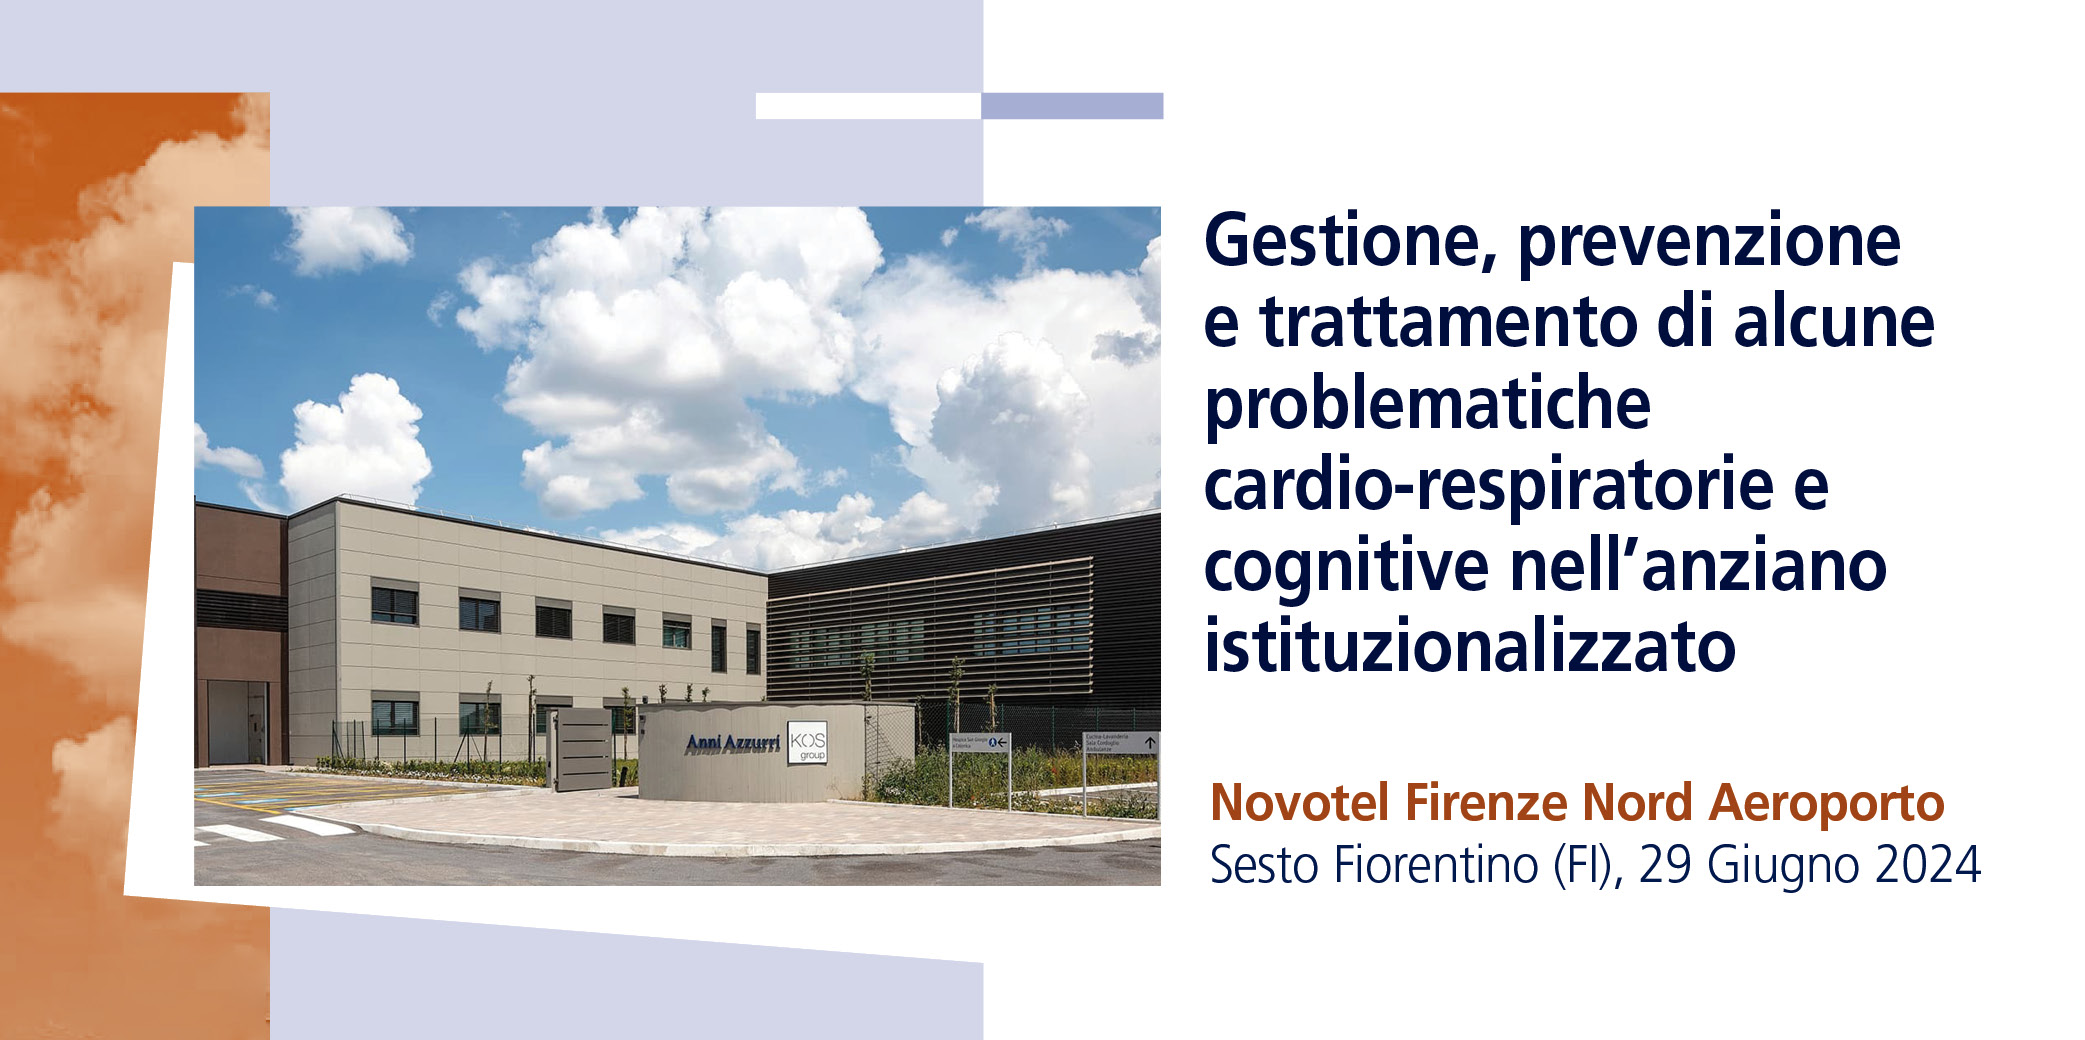 Gestione, prevenzione e trattamento di alcune problematiche cardio-respiratorie e cognitive nell’anziano istituzionalizzato -Sesto Fiorentino (FI), 29 Giugno 2024